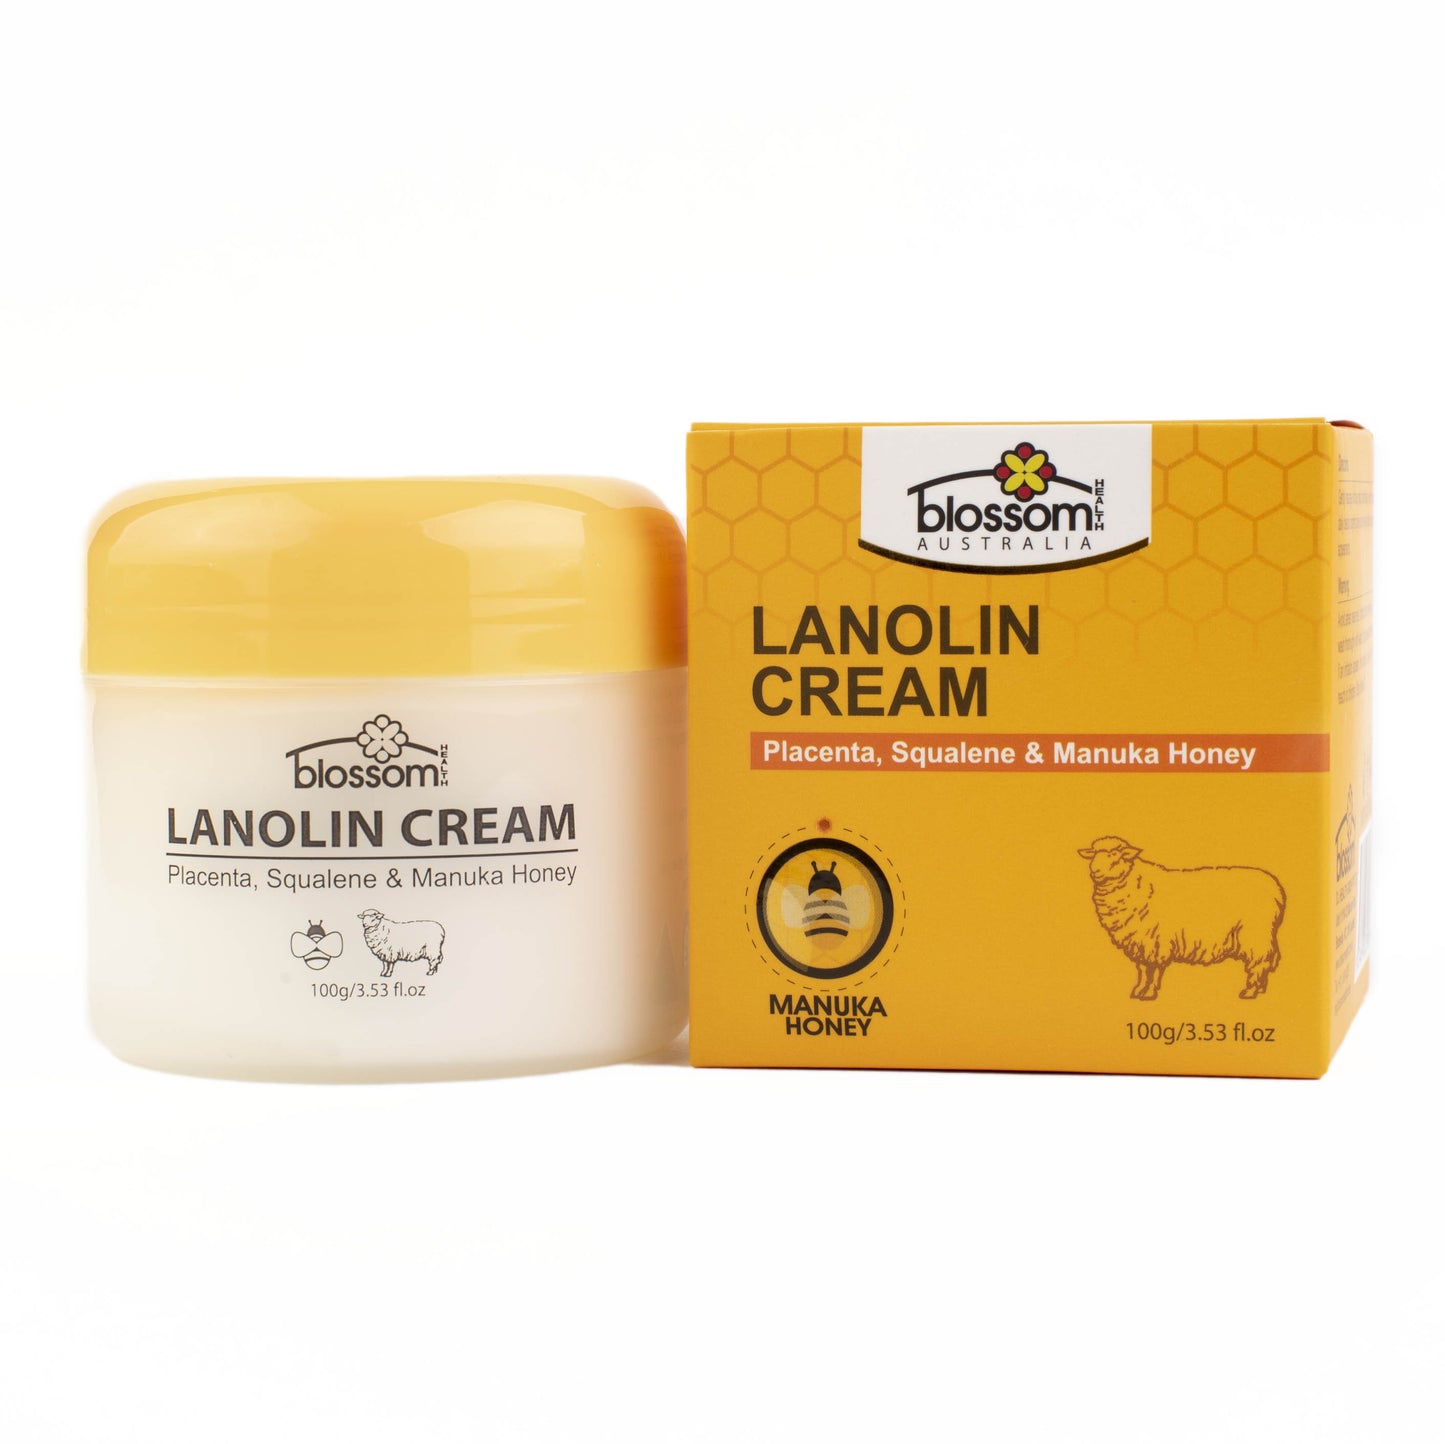 Lanolin Cream with Placenta, Squalene & Manuka Honey 100g